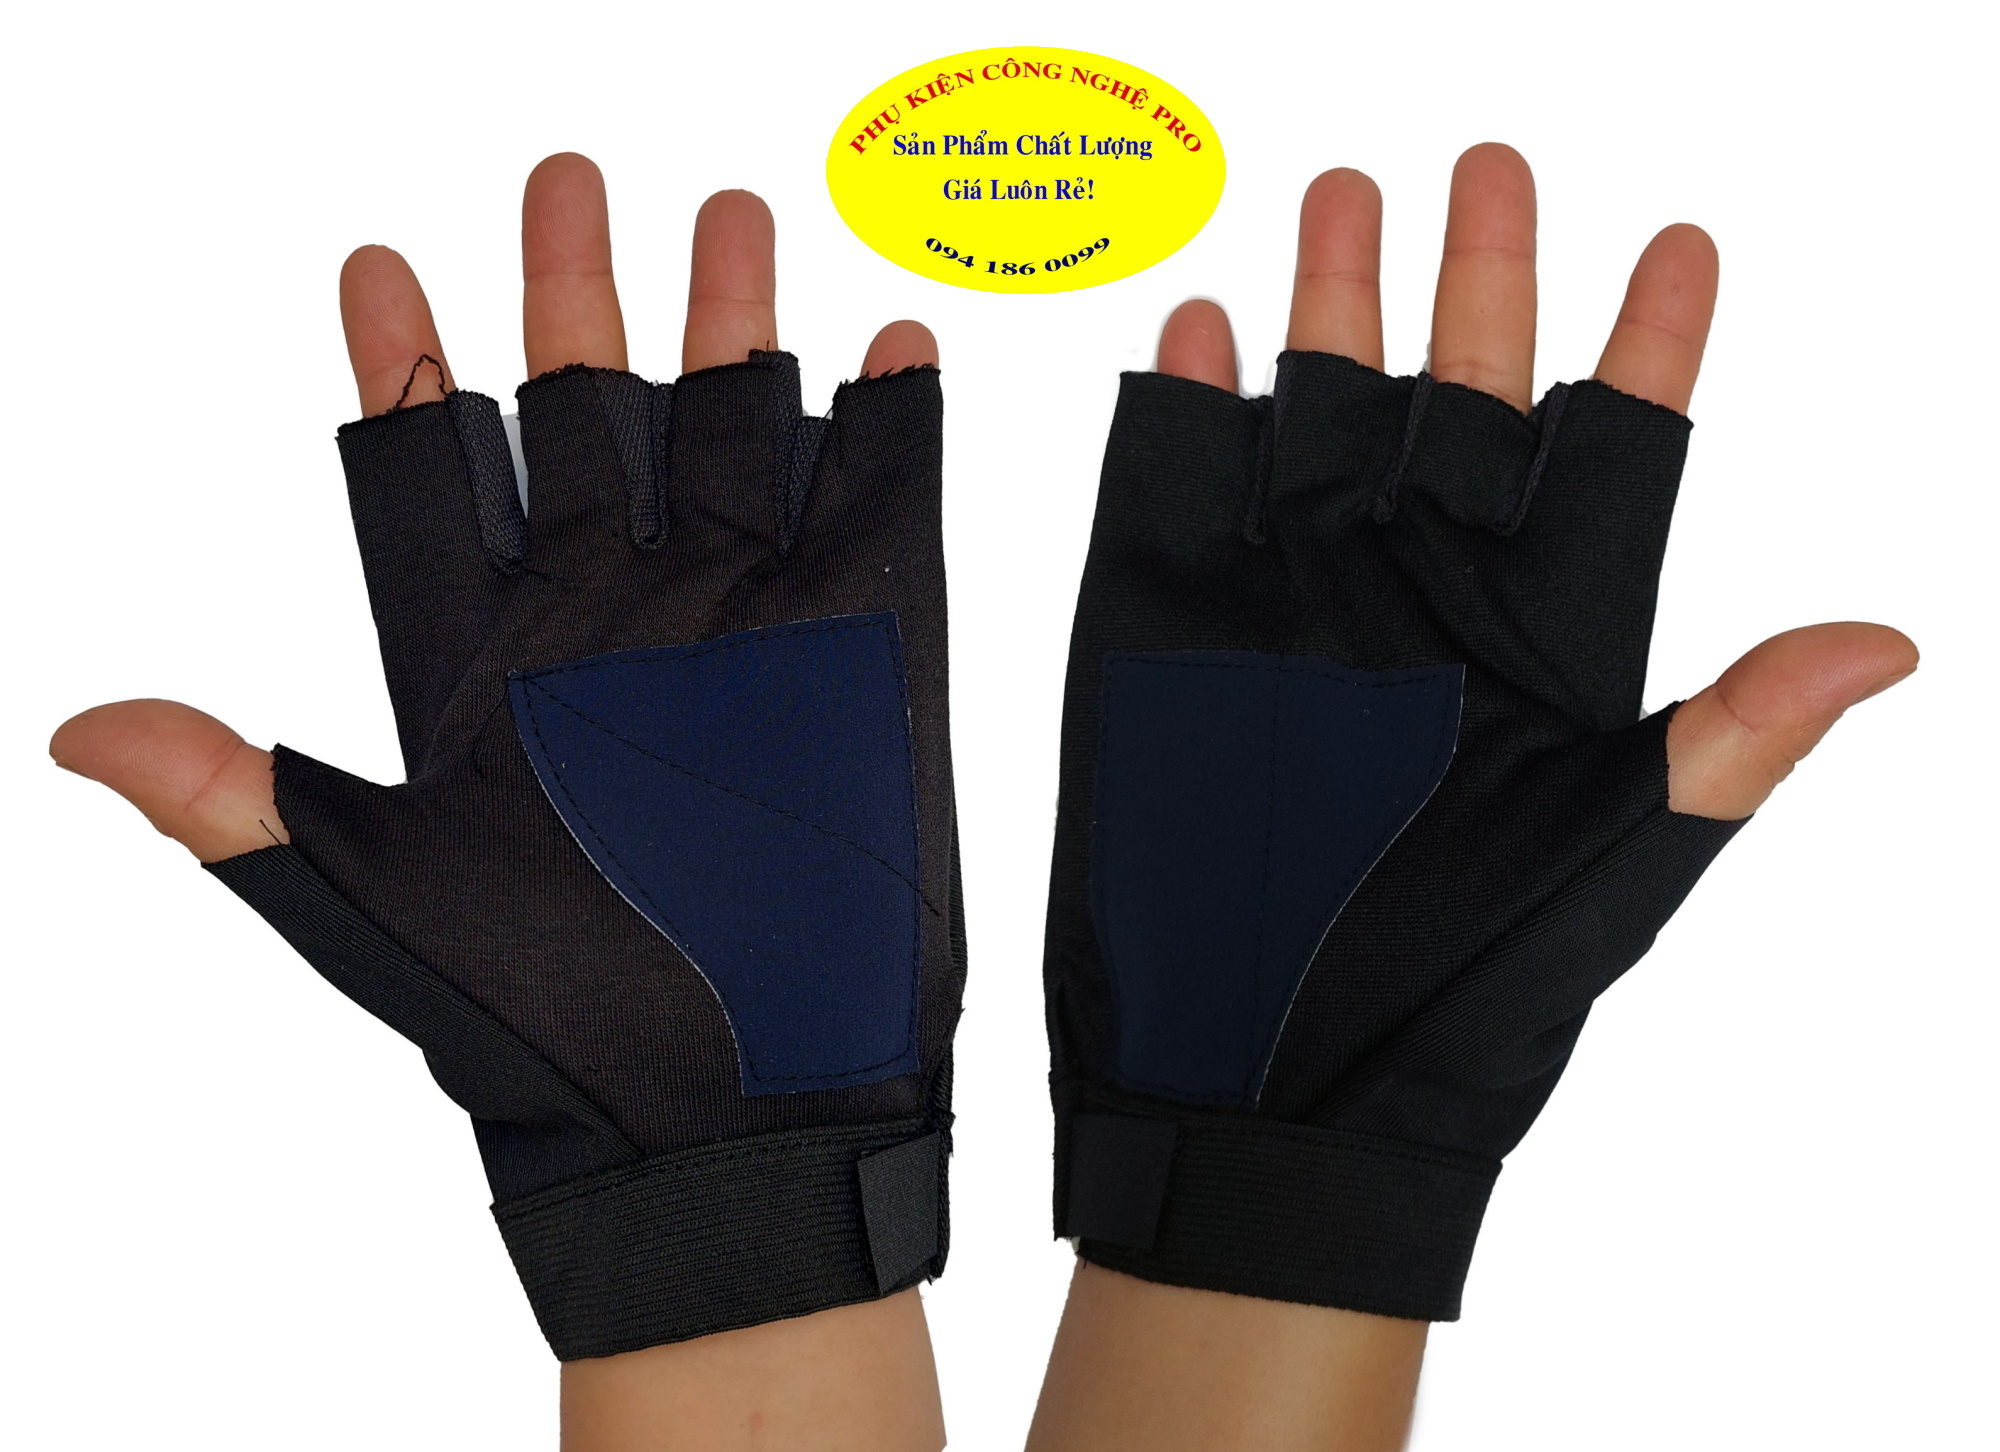 Găng tay nam chống nắng Hở 5 ngón Amaha Tường vy Gắn Logo bất kỳ Chất liệu vải dày, màu đen, mềm, êm, bảo vệ đôi tay